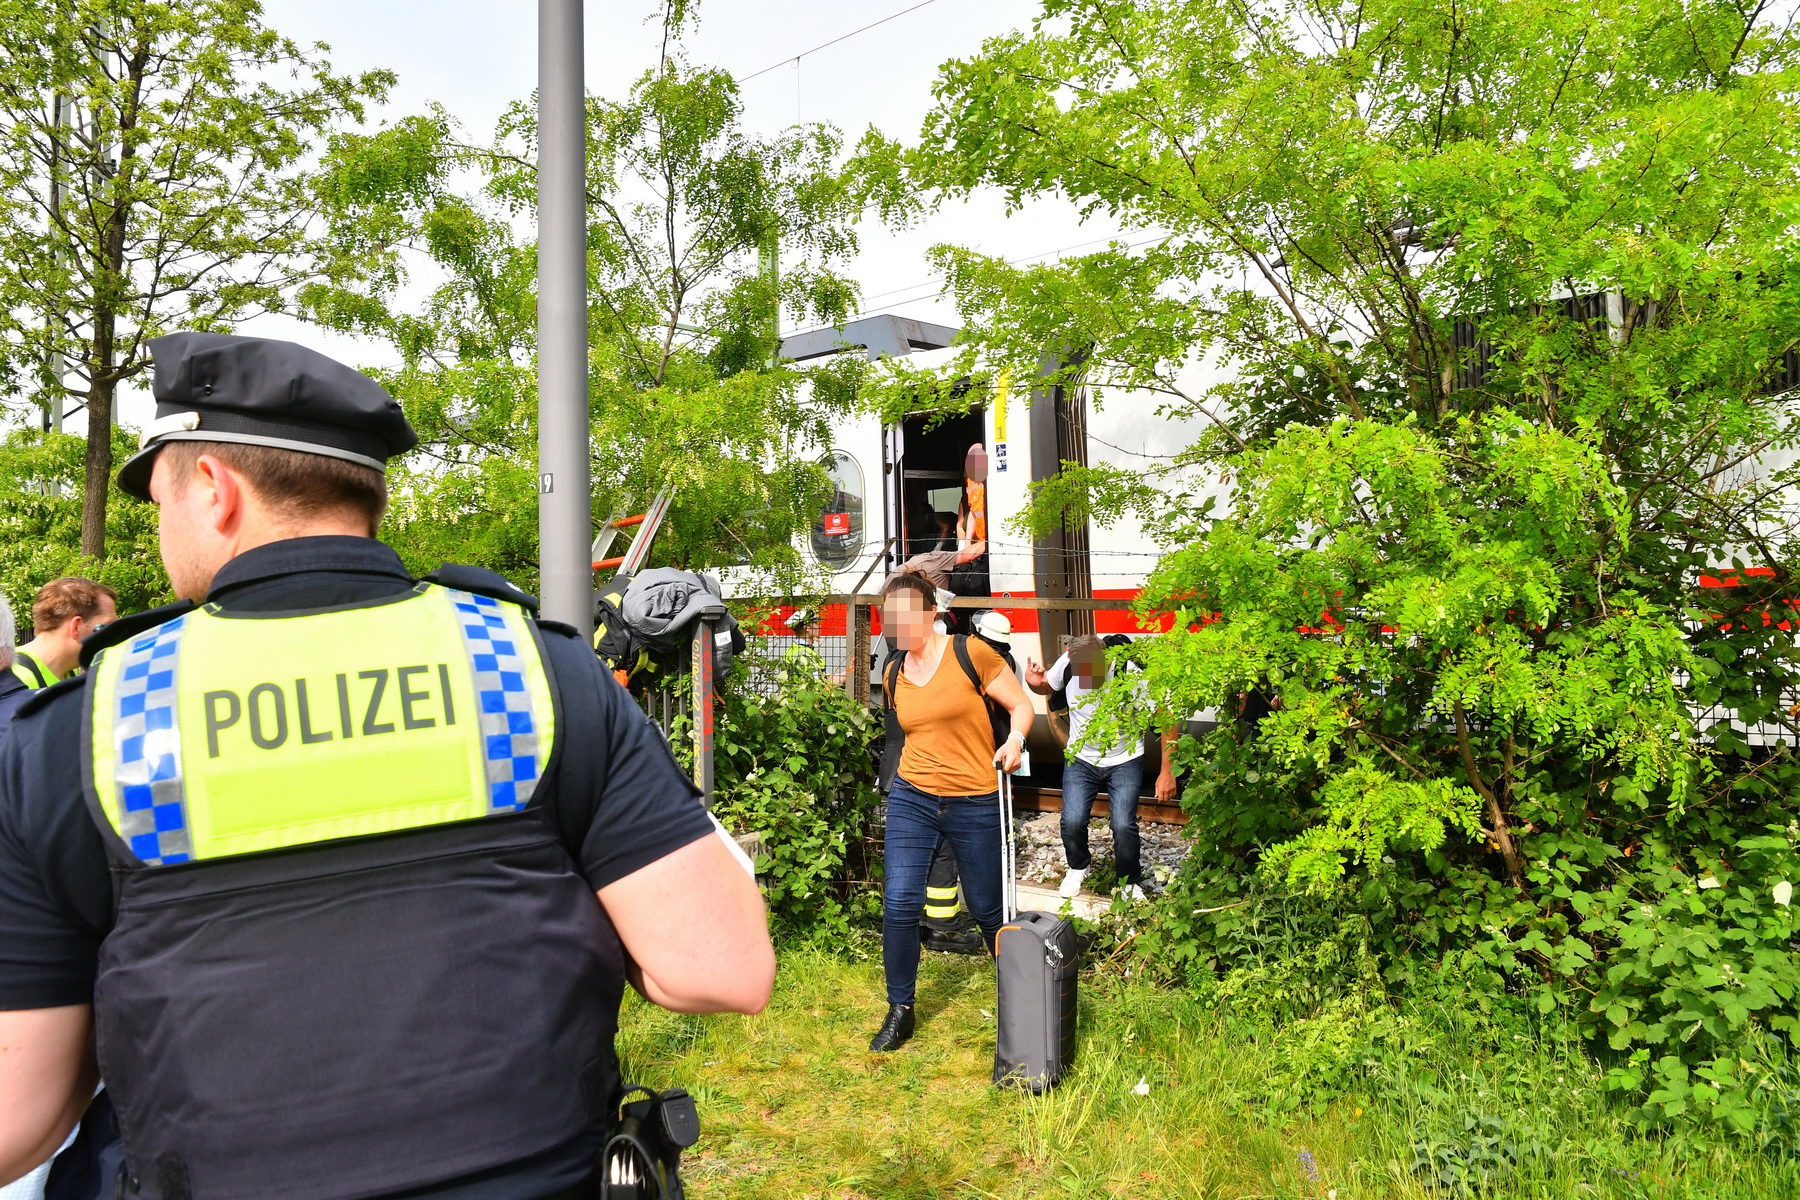 Polizei und Feuerwehr waren im Einsatz, um die rund 400 Fahrgäste aus dem Zug zu evakuieren.